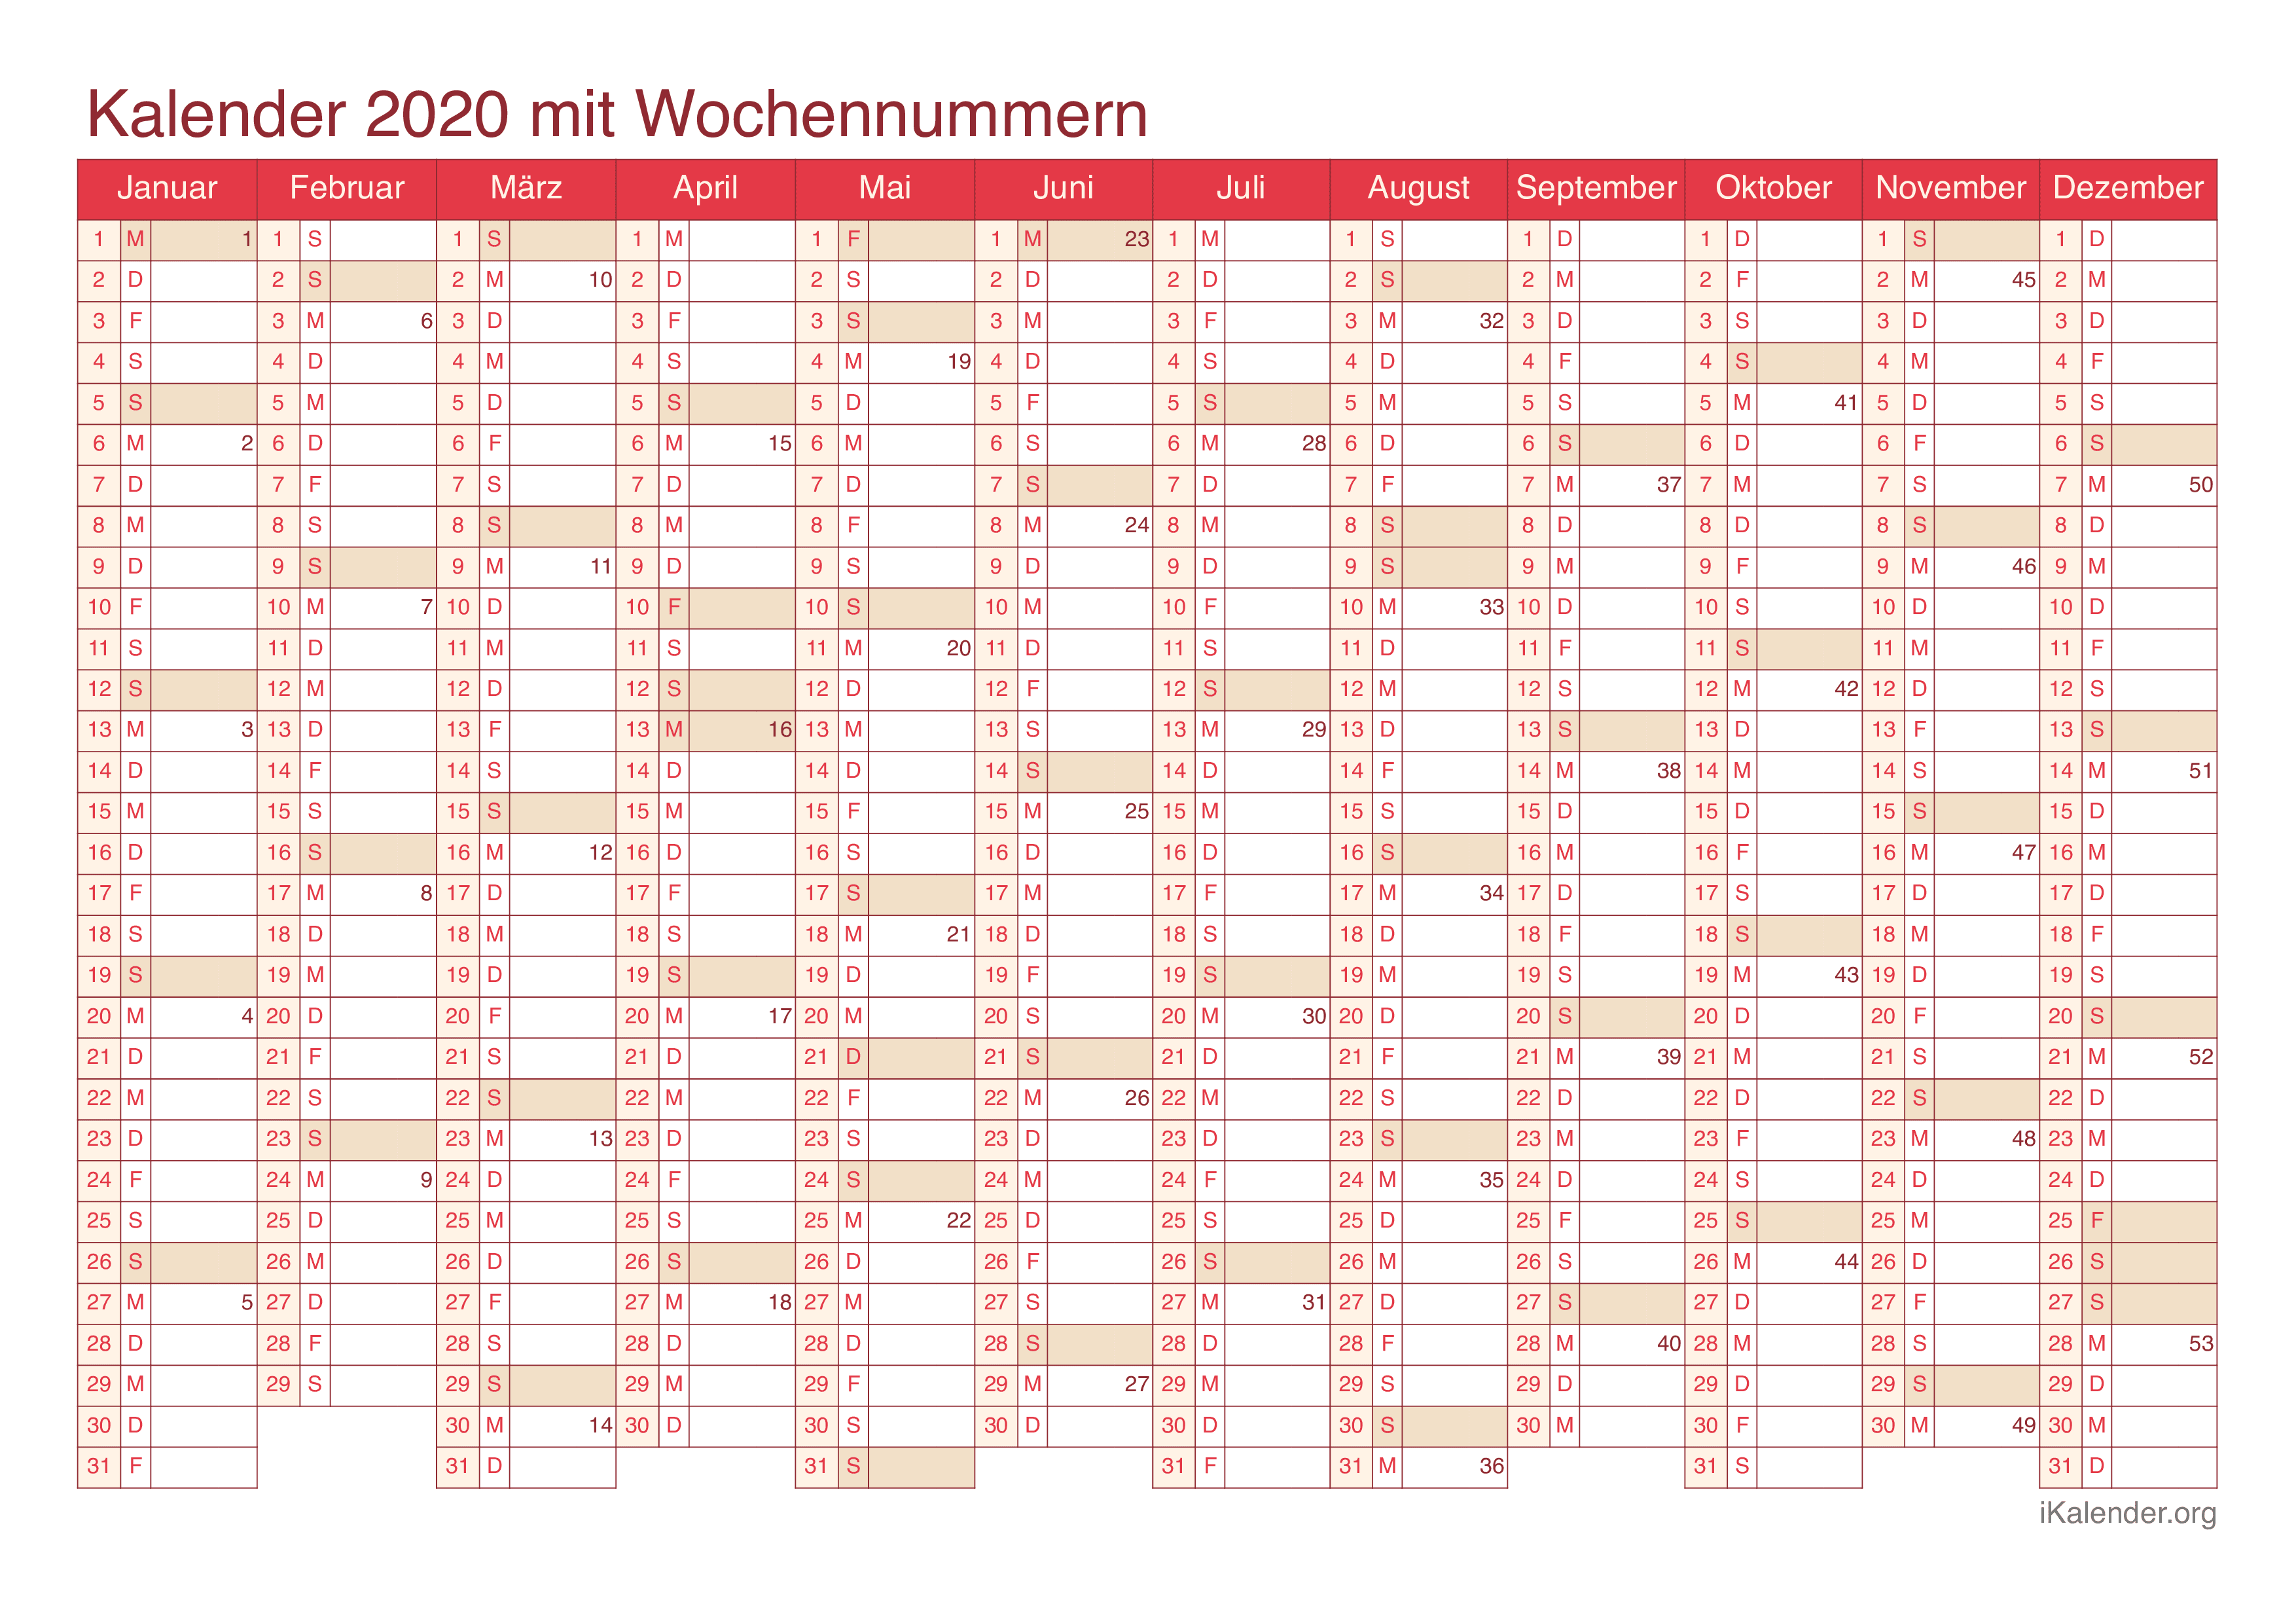 Jahreskalender 2020 mit Wochennummern - Cherry